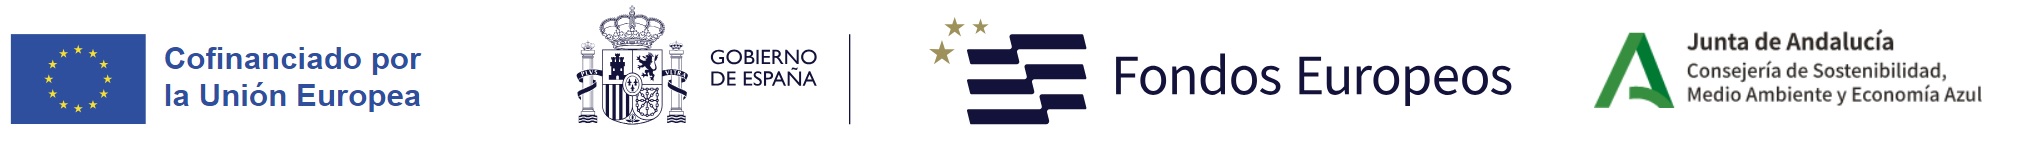 Logos identificativos de cfinanciación por la Unión Europea a través de fondos europeos, con la colaboración del Gobierno de España y la Junta de Andalucía (Consejería de Sostenibilidad, Medio Ambiente y Economía Azul)